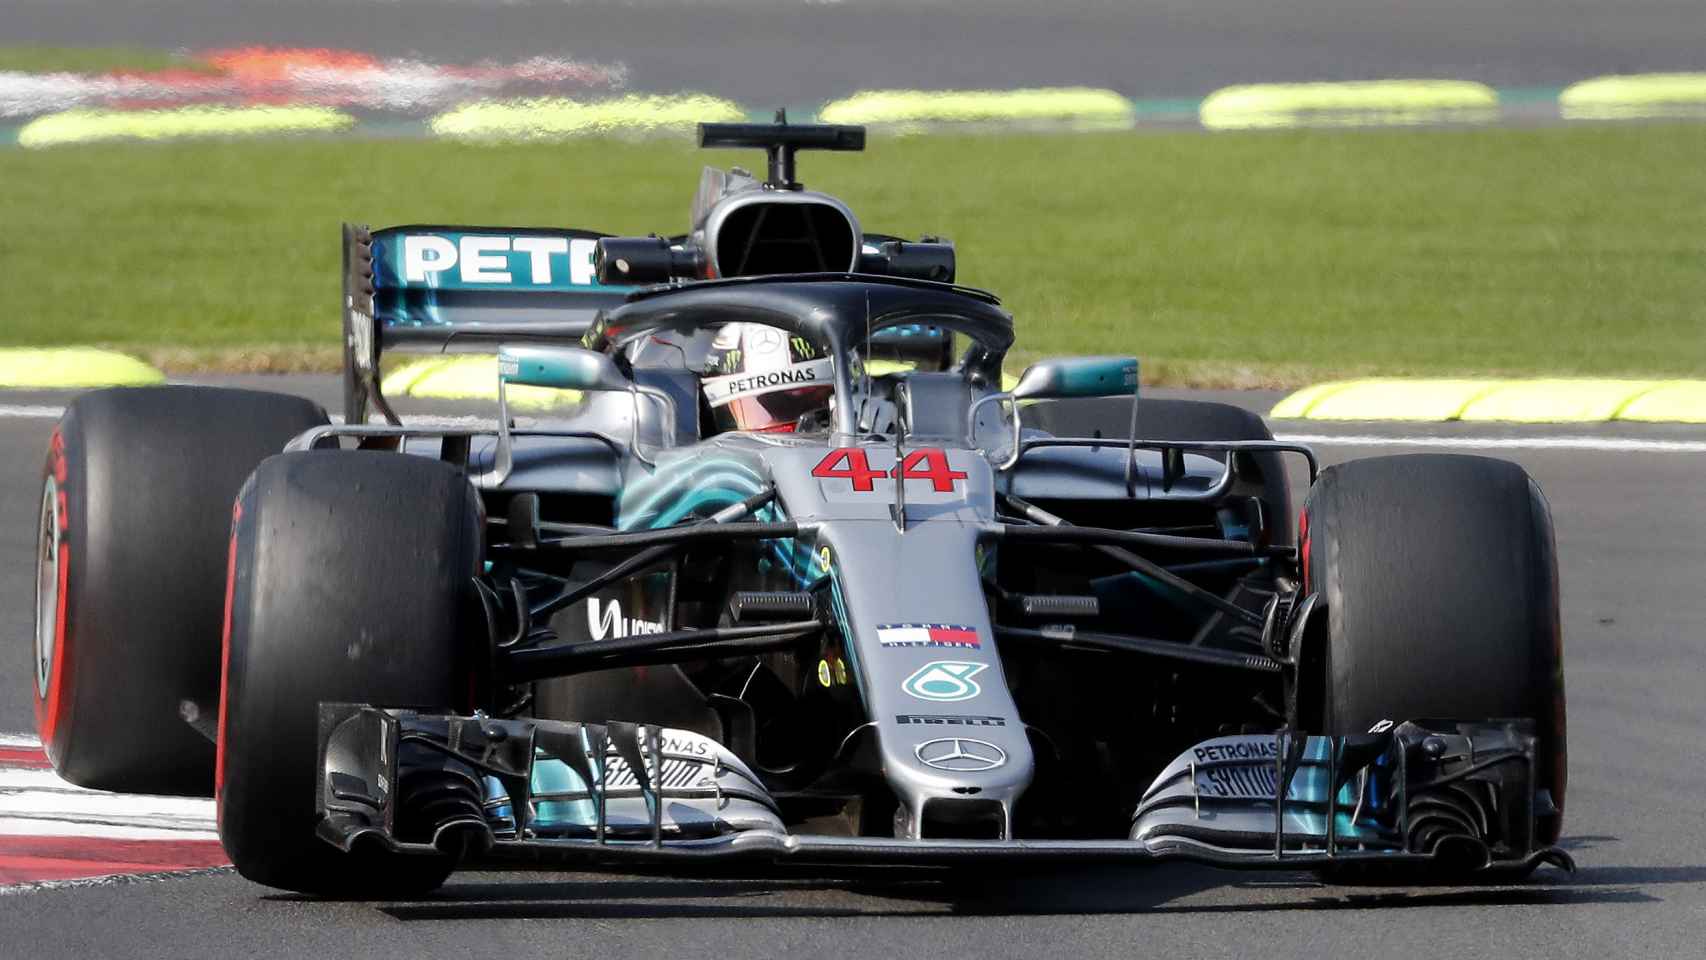 Segunda práctica del Gran Premio de Formula Uno